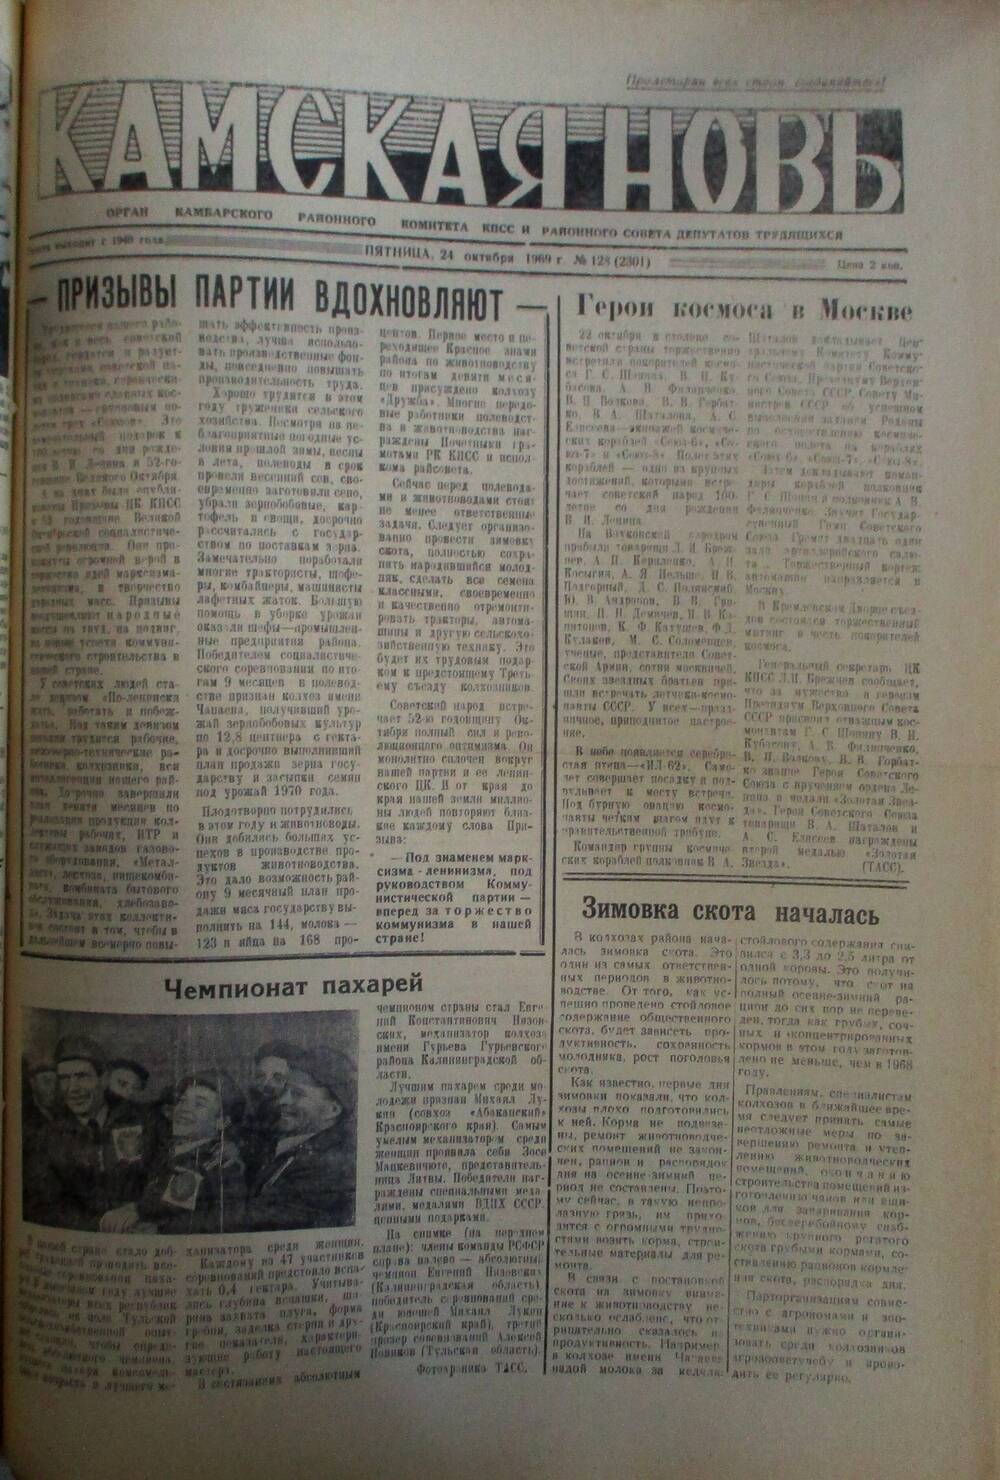 Газеты Камская новь за 1969 год, орган Камбарского райсовета и  РККПСС, с №1 по №66, с №68 по №156. №128.